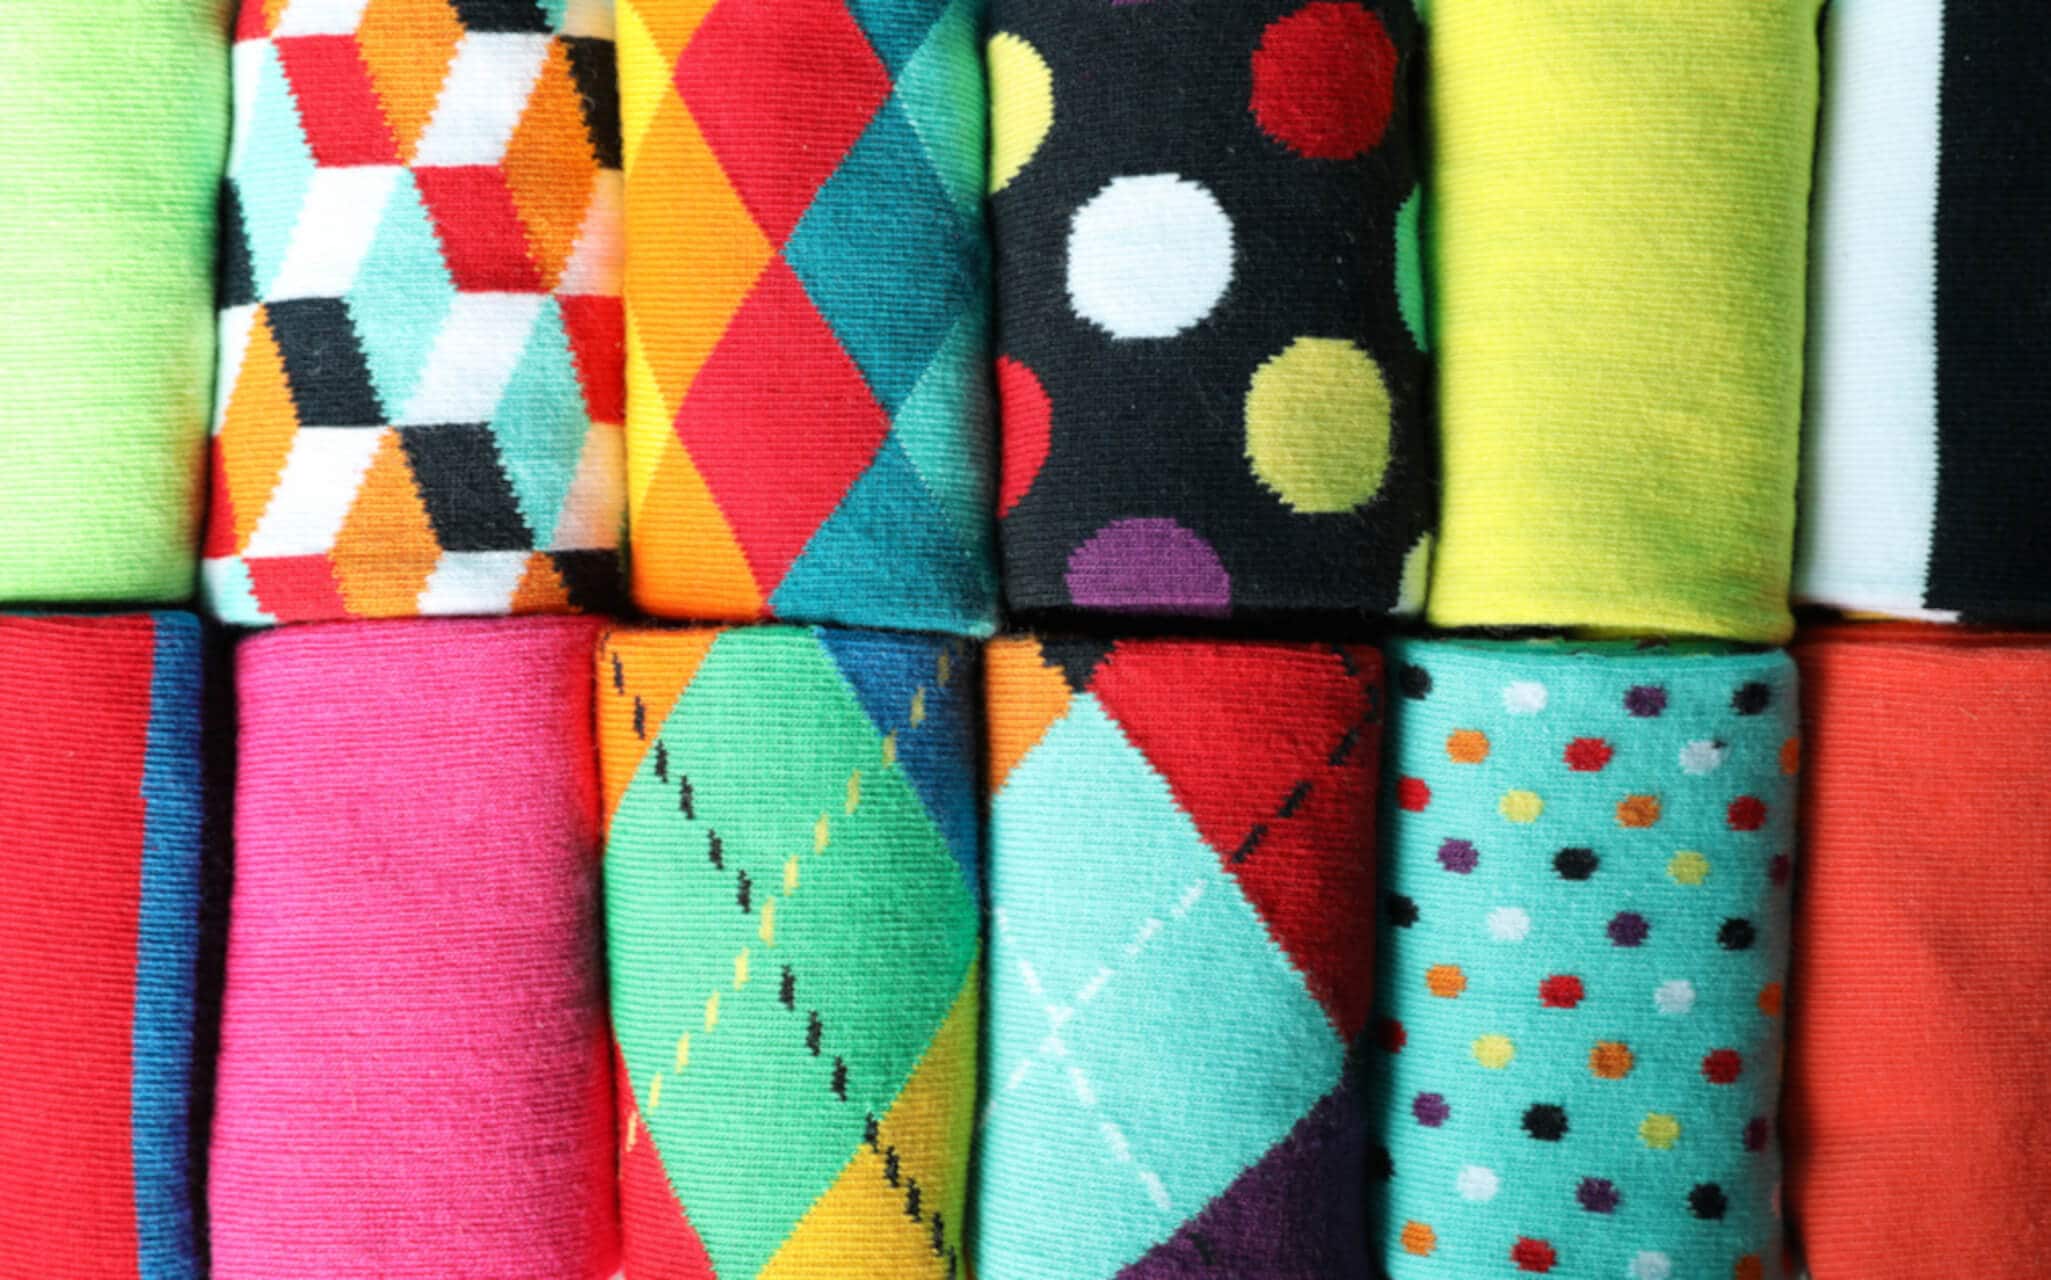 Auswahl an bunt gemusterten Socken